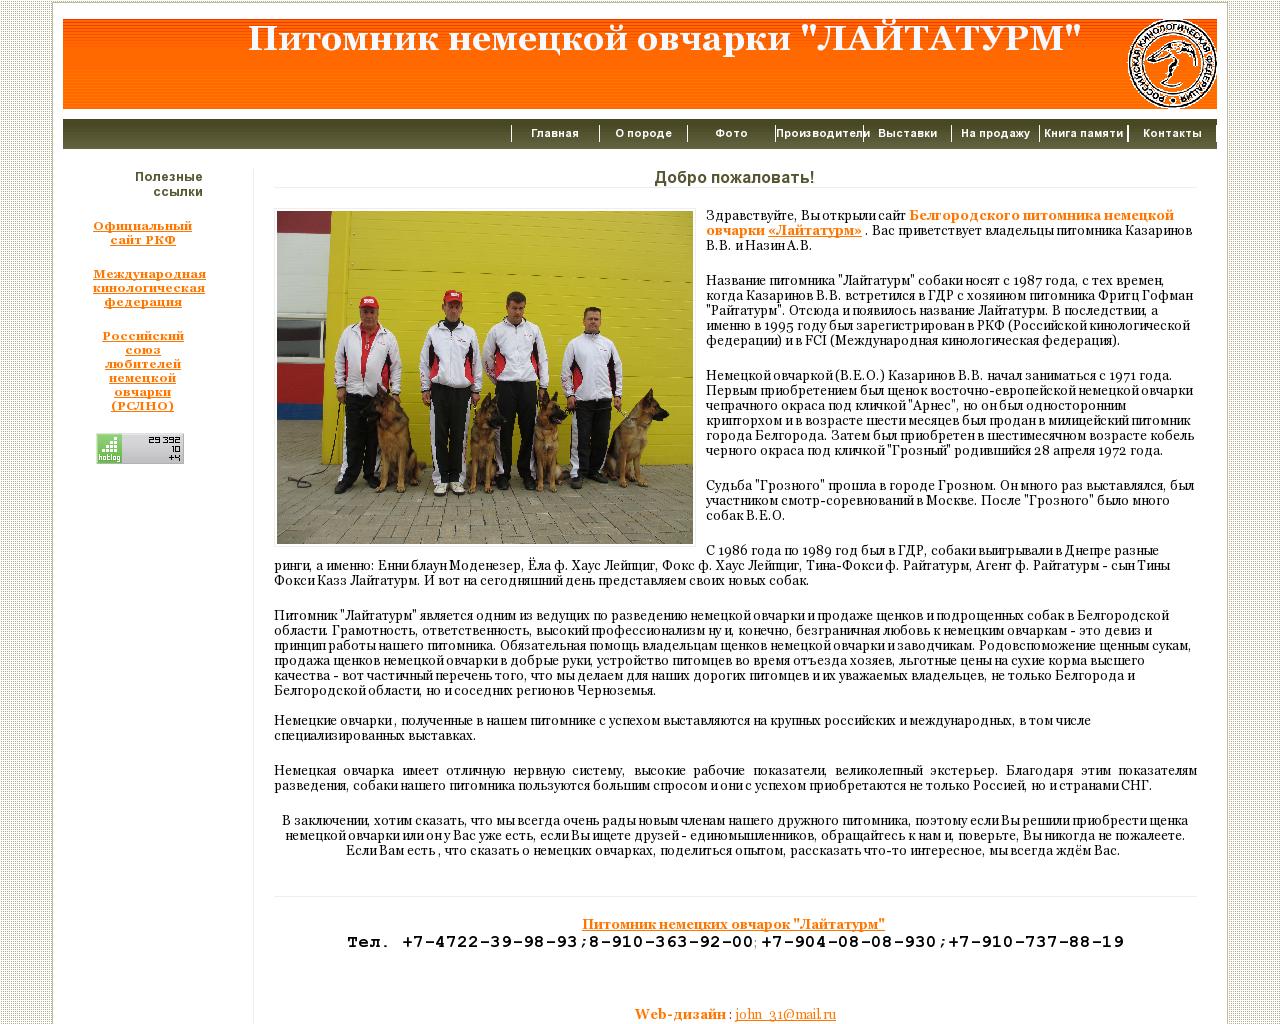 Изображение сайта leitaturm.ru в разрешении 1280x1024